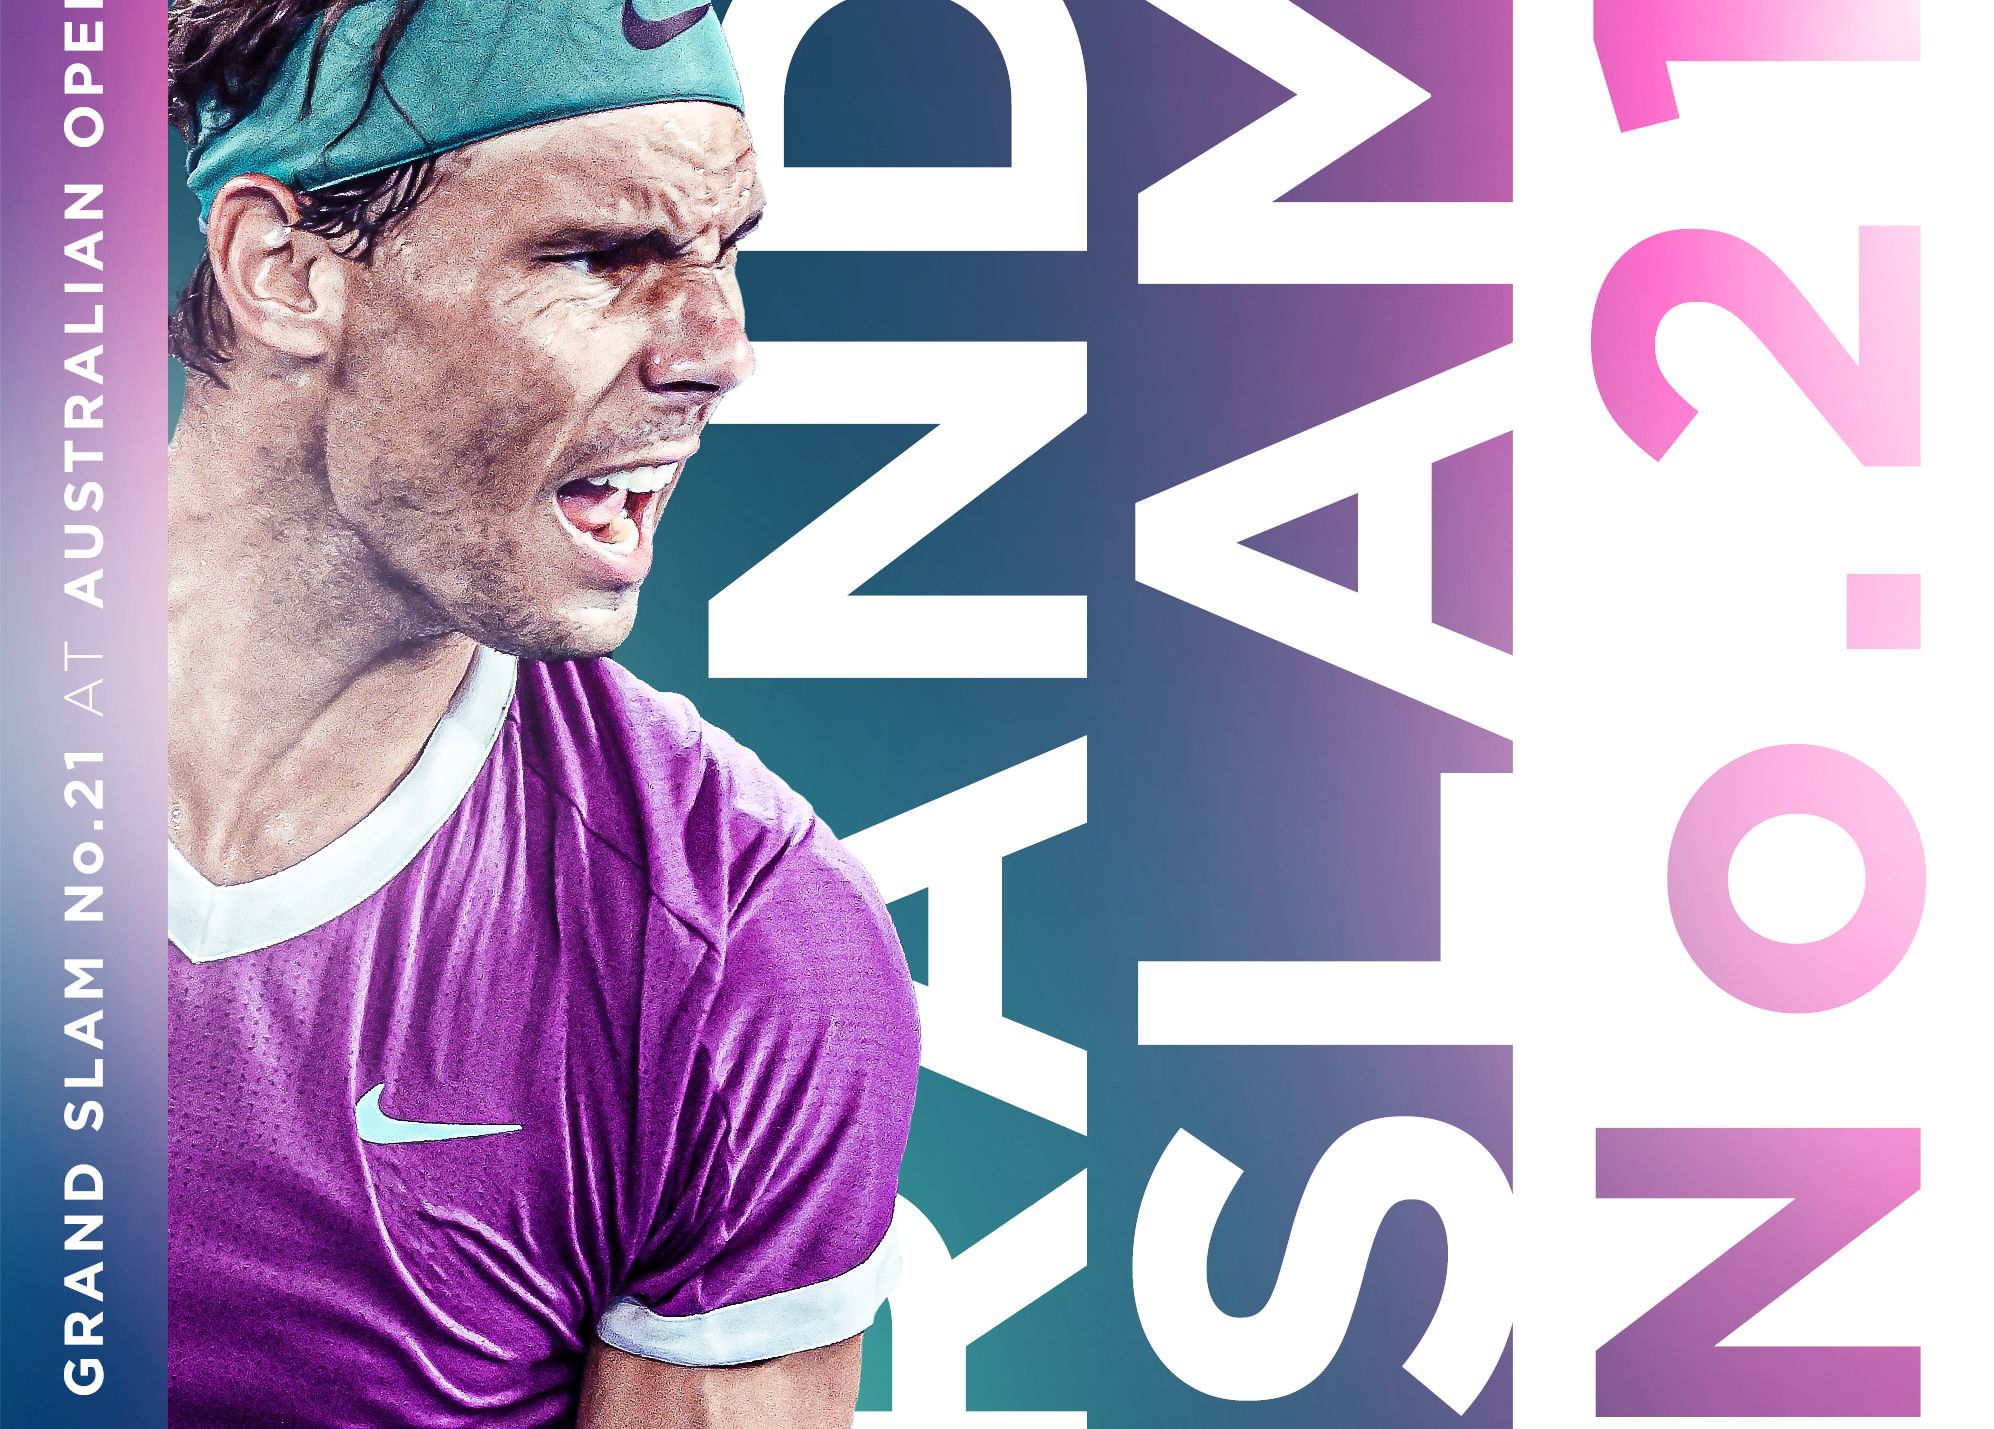 Rafael Nadal este campionul de la Australian Open 2022. A devenit recordmenul grand slam-urilor câştigate